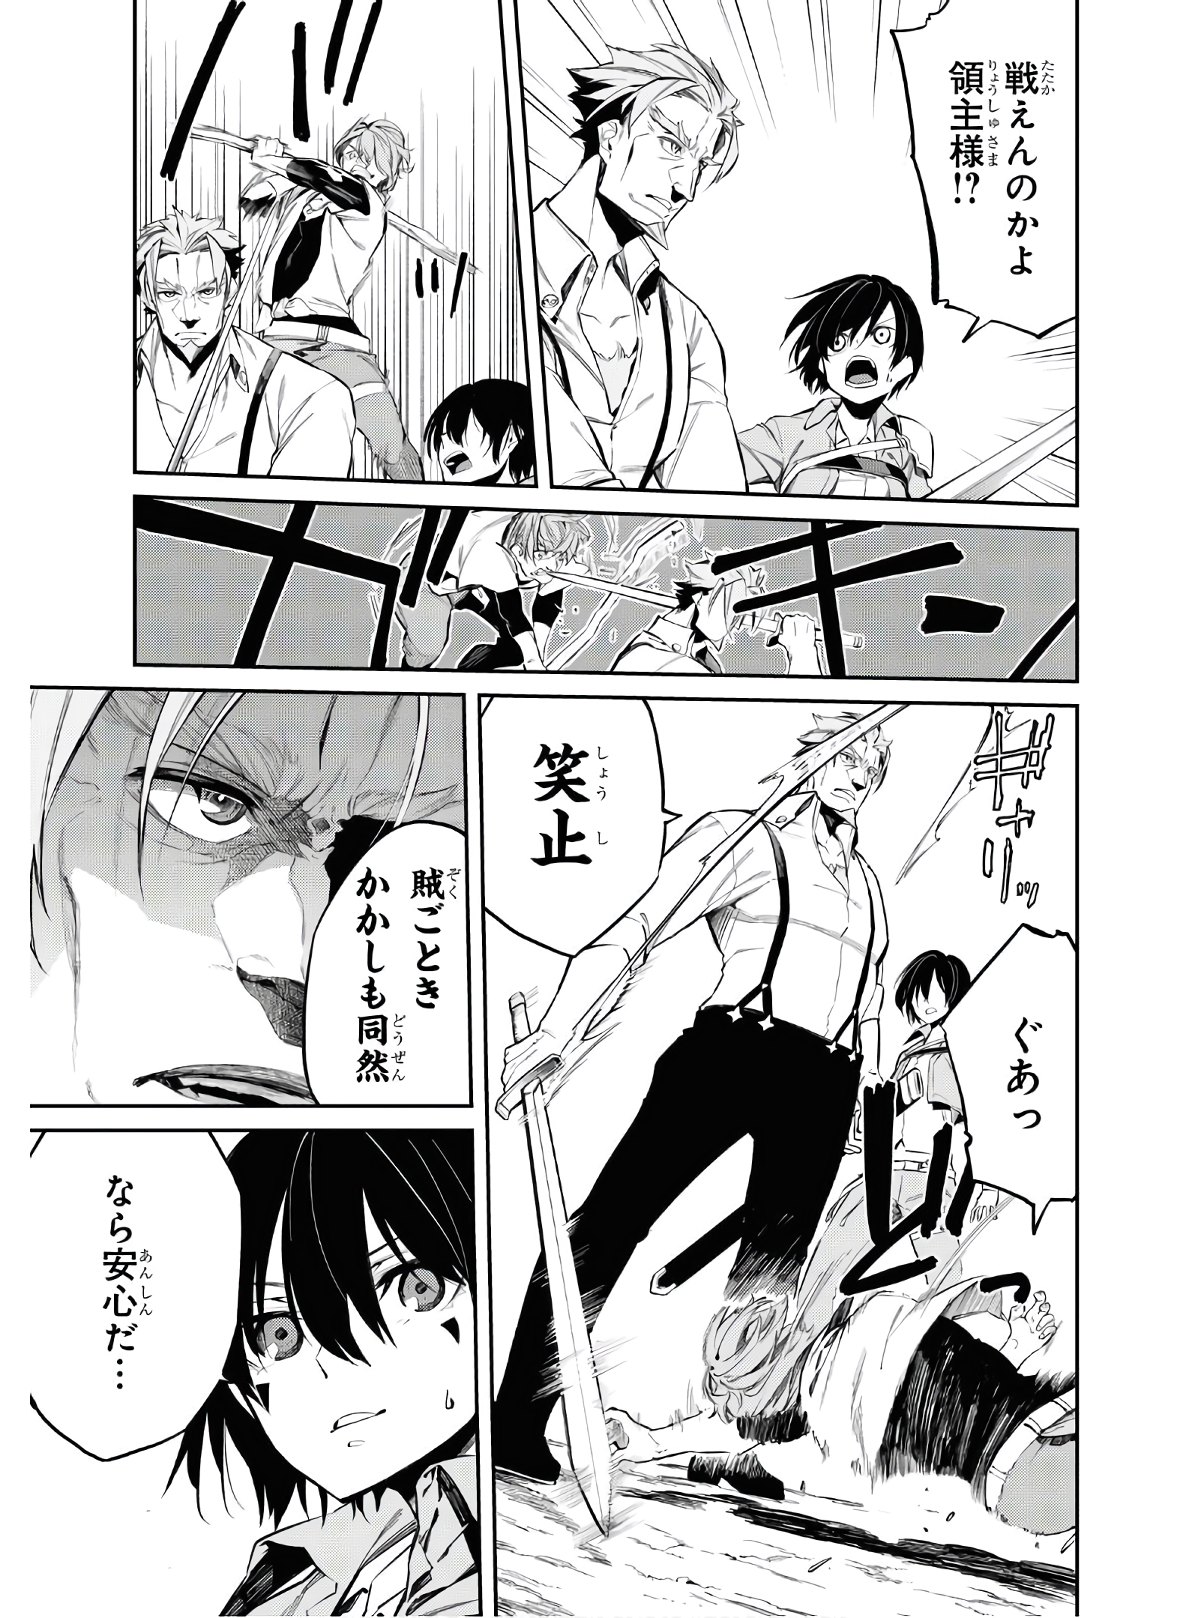 Maryoku 0 de Saikyou no Daikenja ~Sore wa Mahou dewa Nai, Butsuri da!~ - Chapter 4 - Page 9